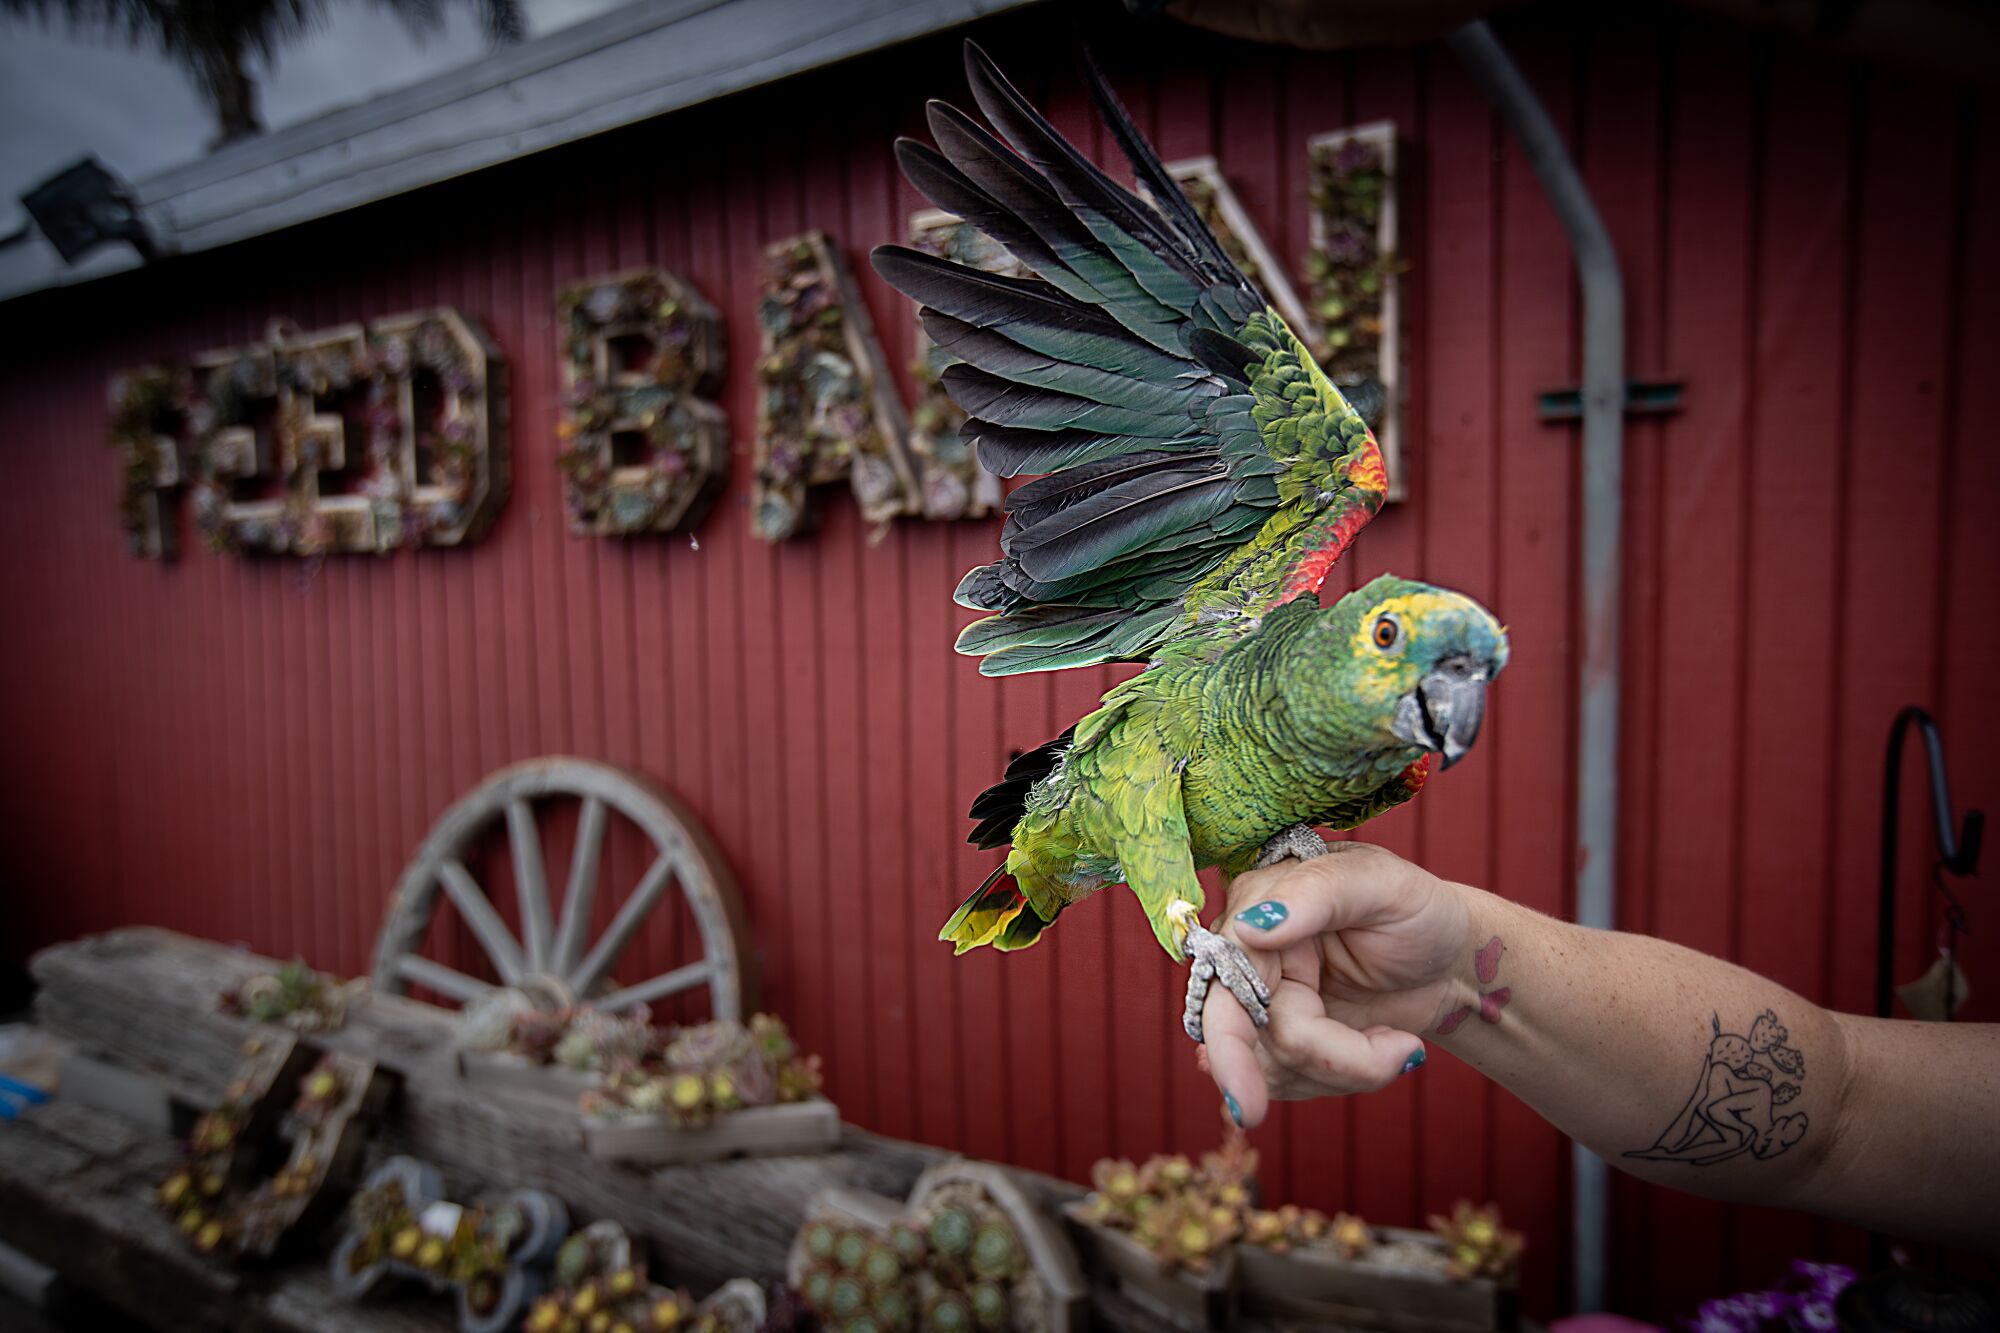 Une Amazone à front bleu - un perroquet vert - déploie ses ailes alors qu'elle est assise sur une main tendue.